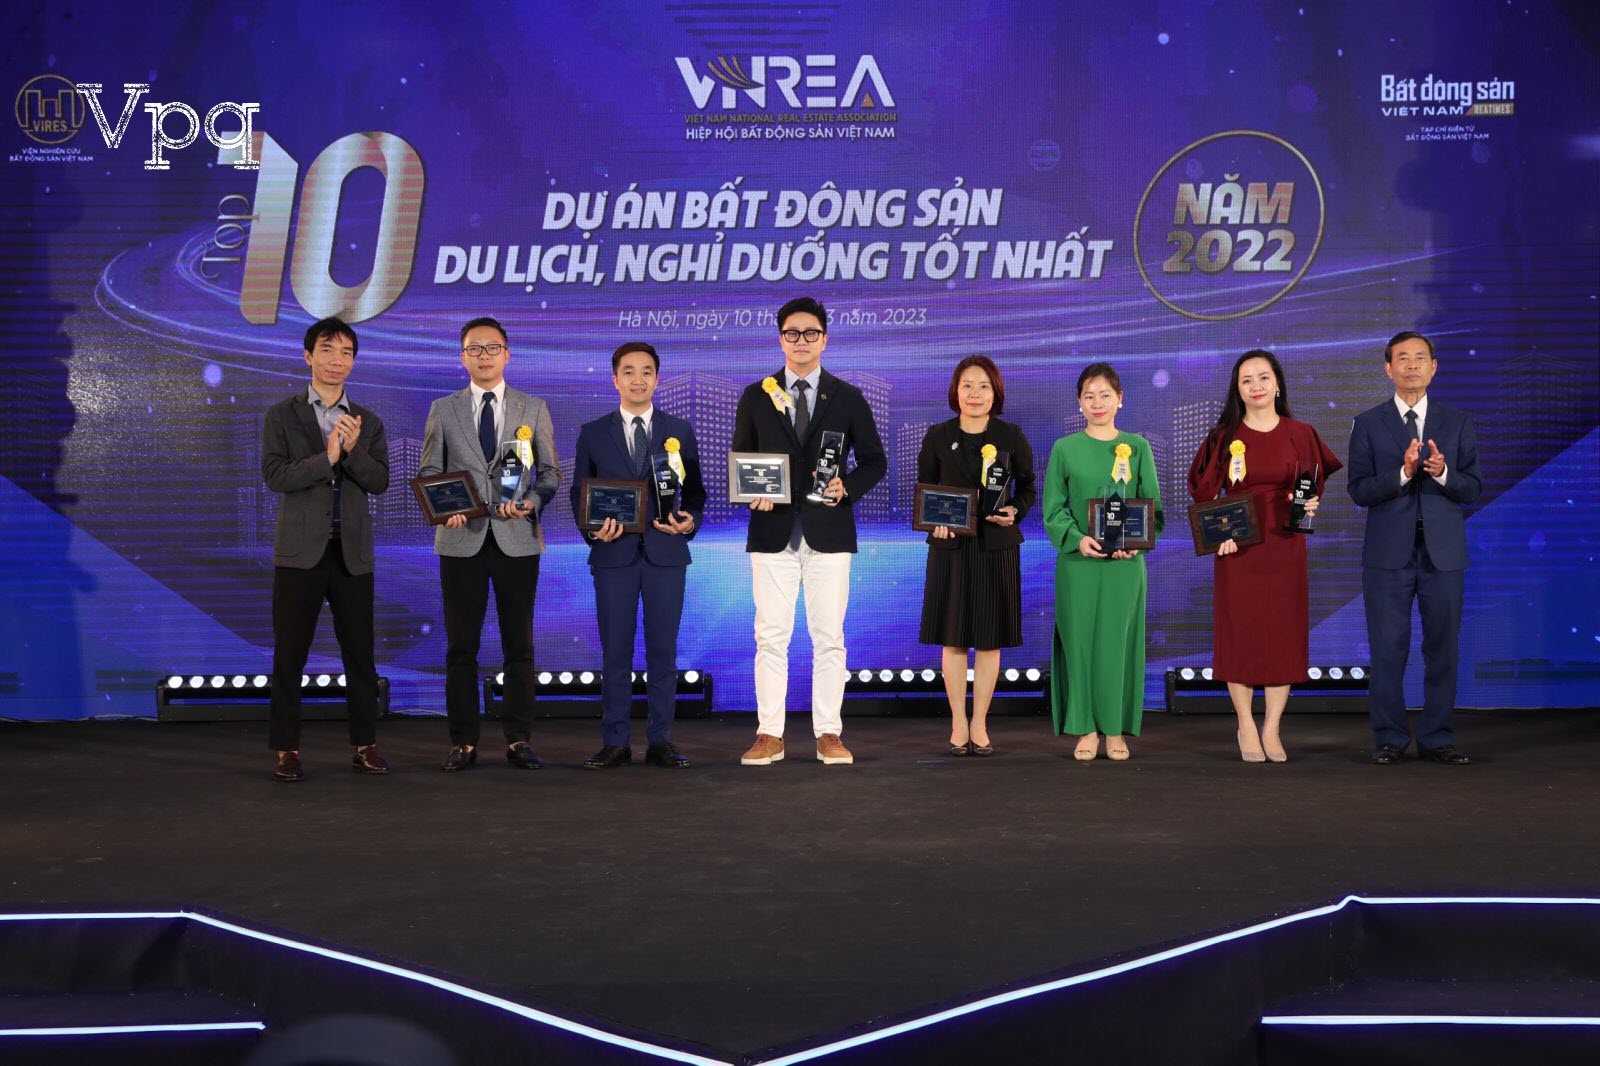 Ông Đinh Gia Long - Giám đốc Kinh doanh Sun Property nhận giải thưởng Top 10 Dự án bất động sản du lịch, nghỉ dưỡng tốt nhất năm 2022 cho Sun Onsen Village Limited Edition